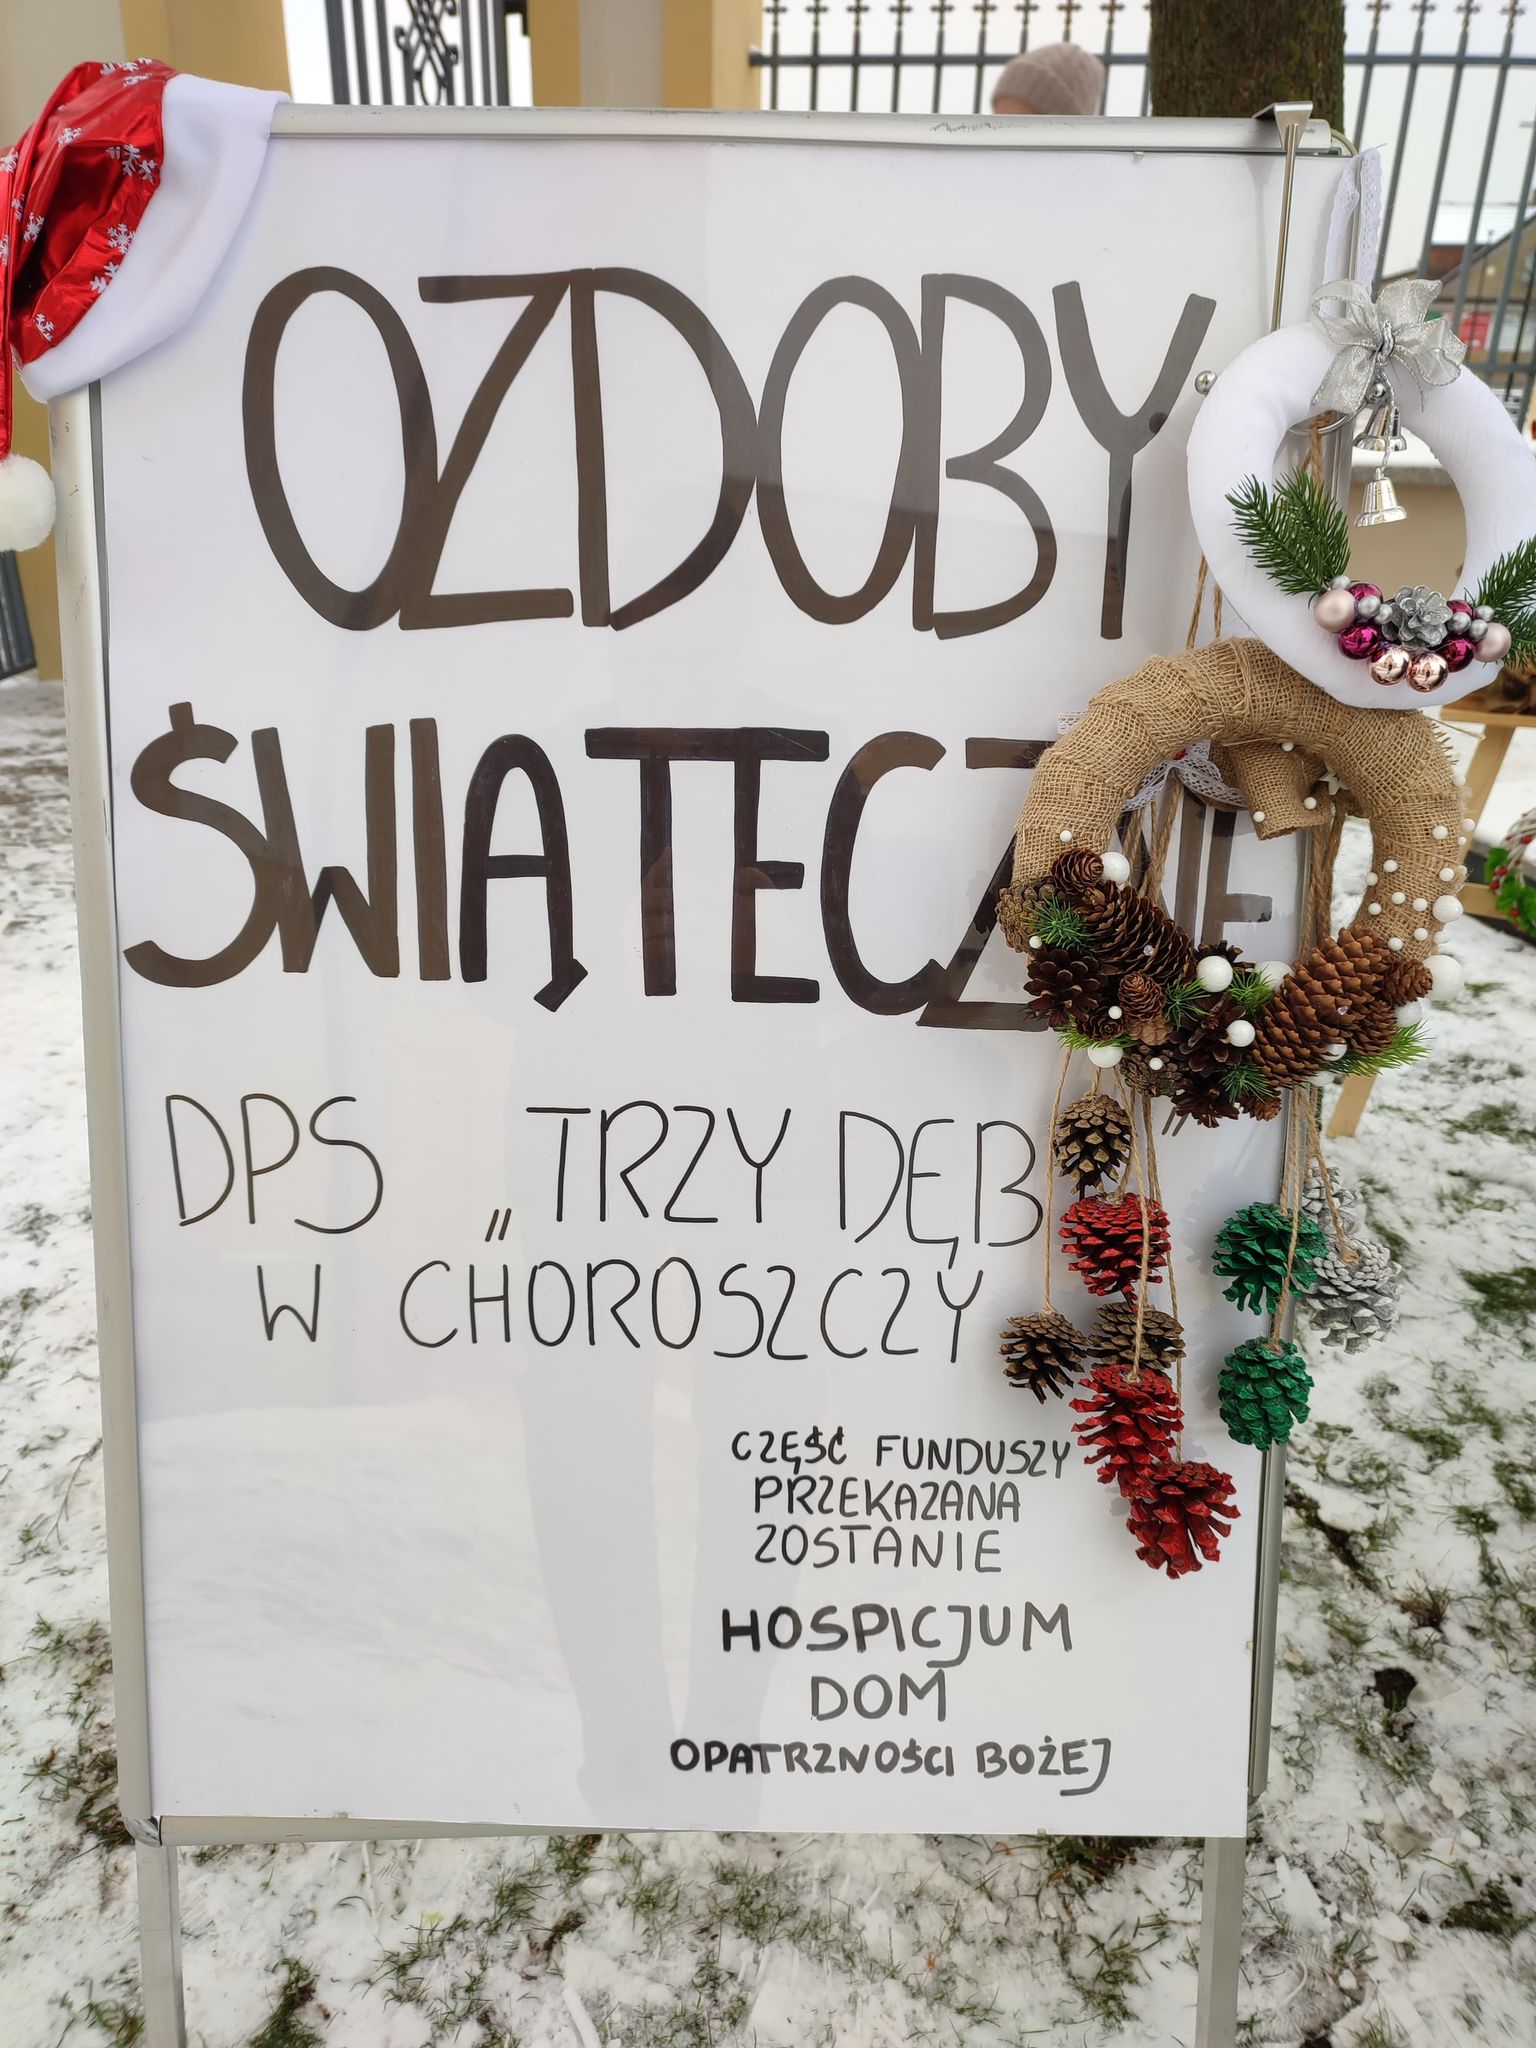 Kiermasz ozdób świątecznych w Choroszczy - część dochodu na rzecz nieuleczalnie chorych
